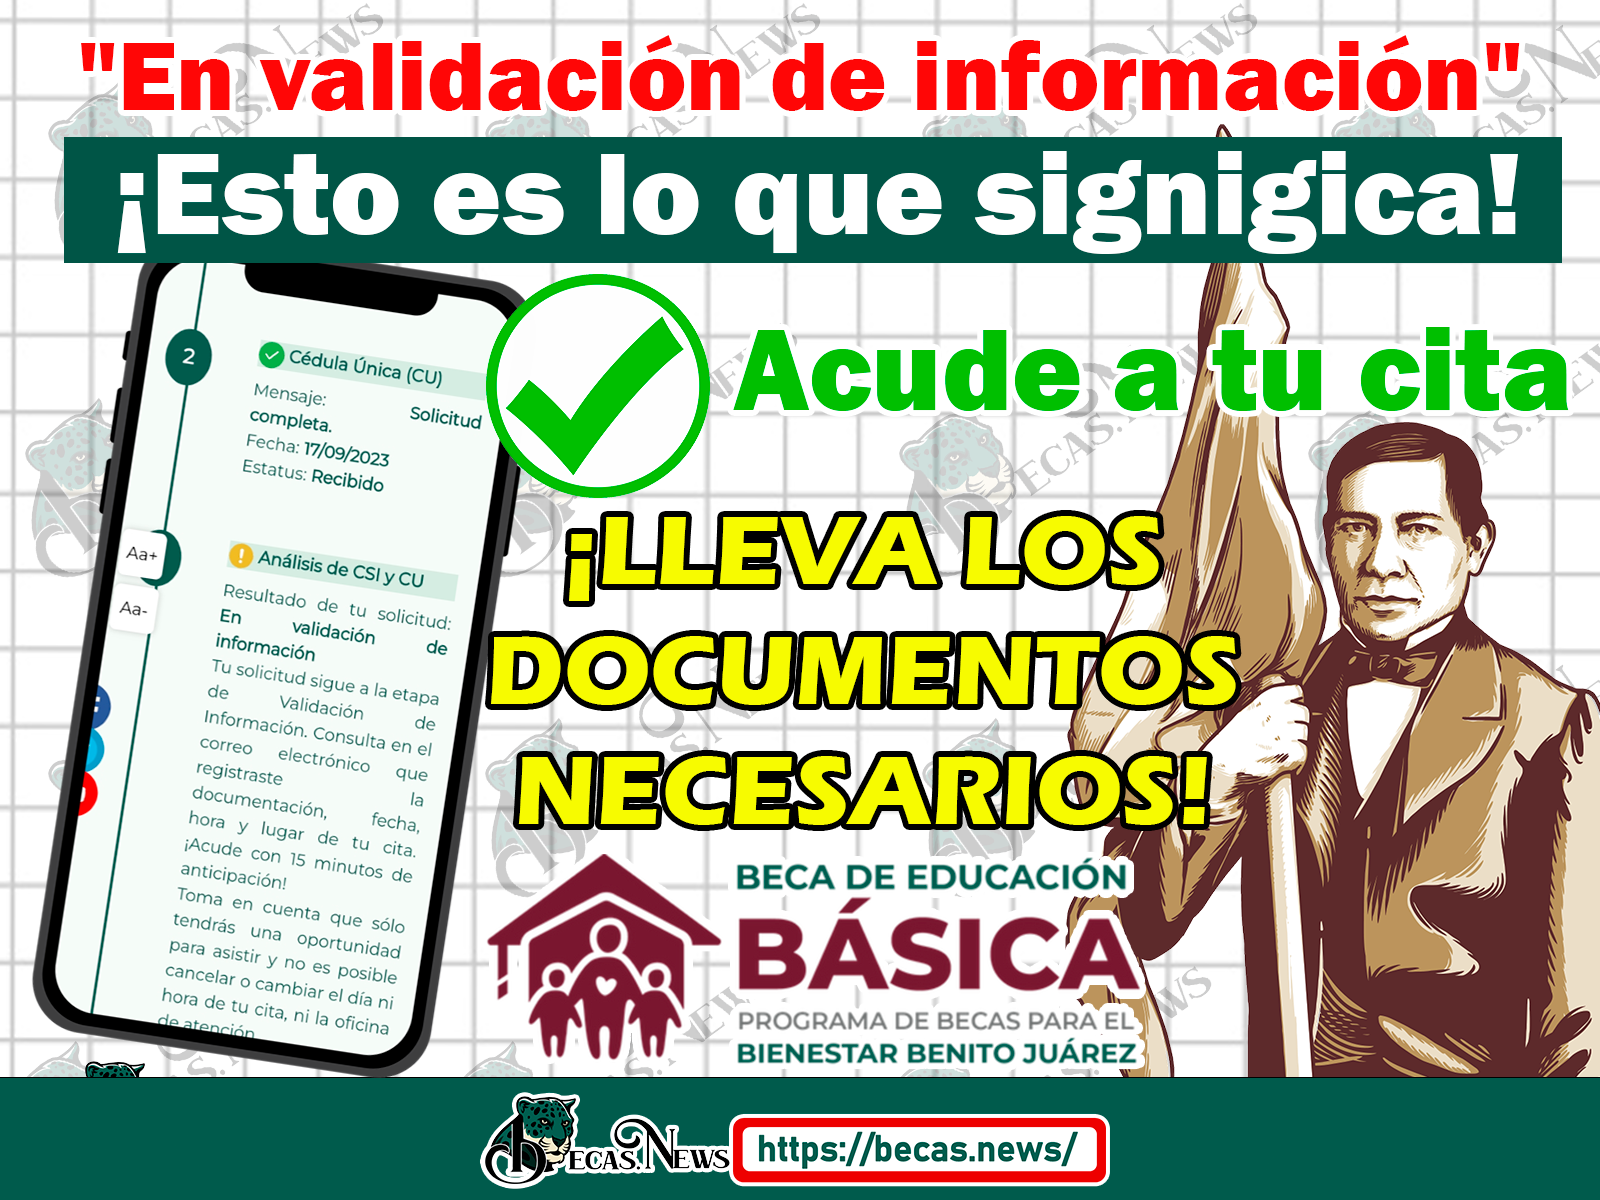 URGENTE ¡Consulta que significa el resultado de "En validación de información"! Becas Benito Juárez